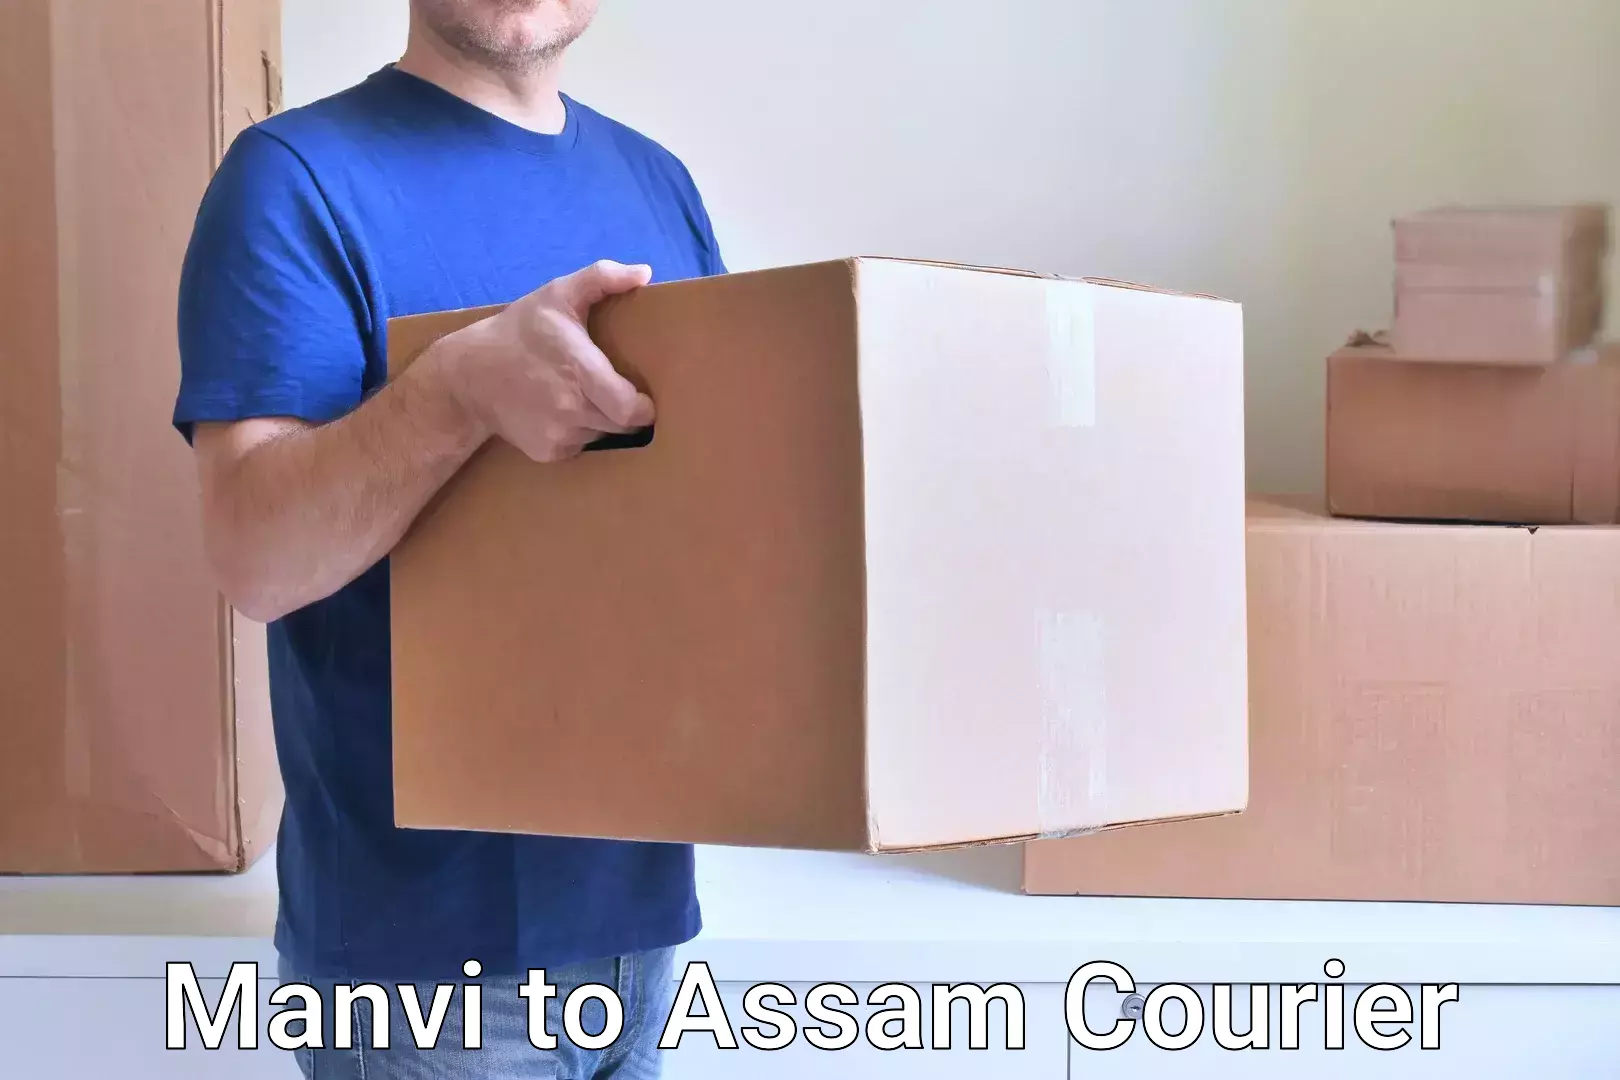 Courier service comparison Manvi to Assam